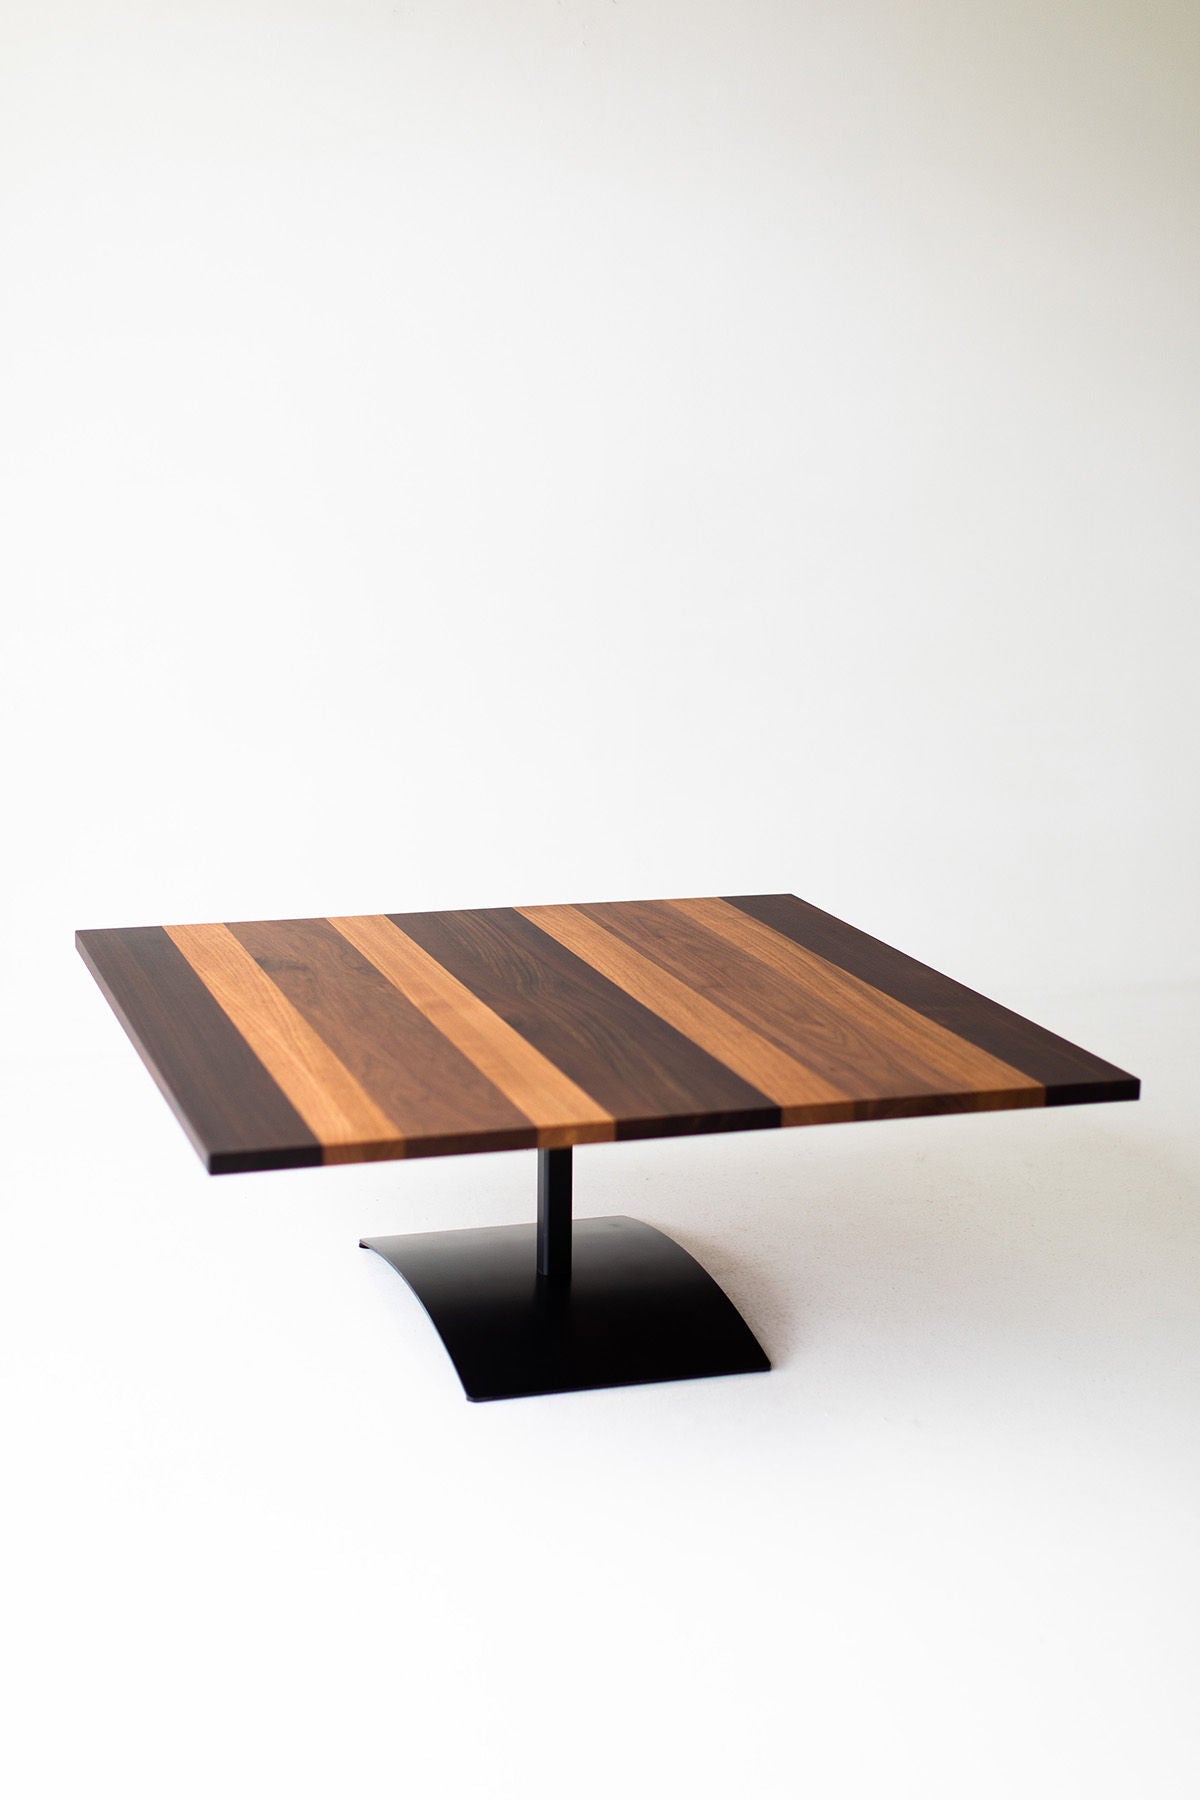 Milo Baughman Striped Top Coffee Table B3933 08